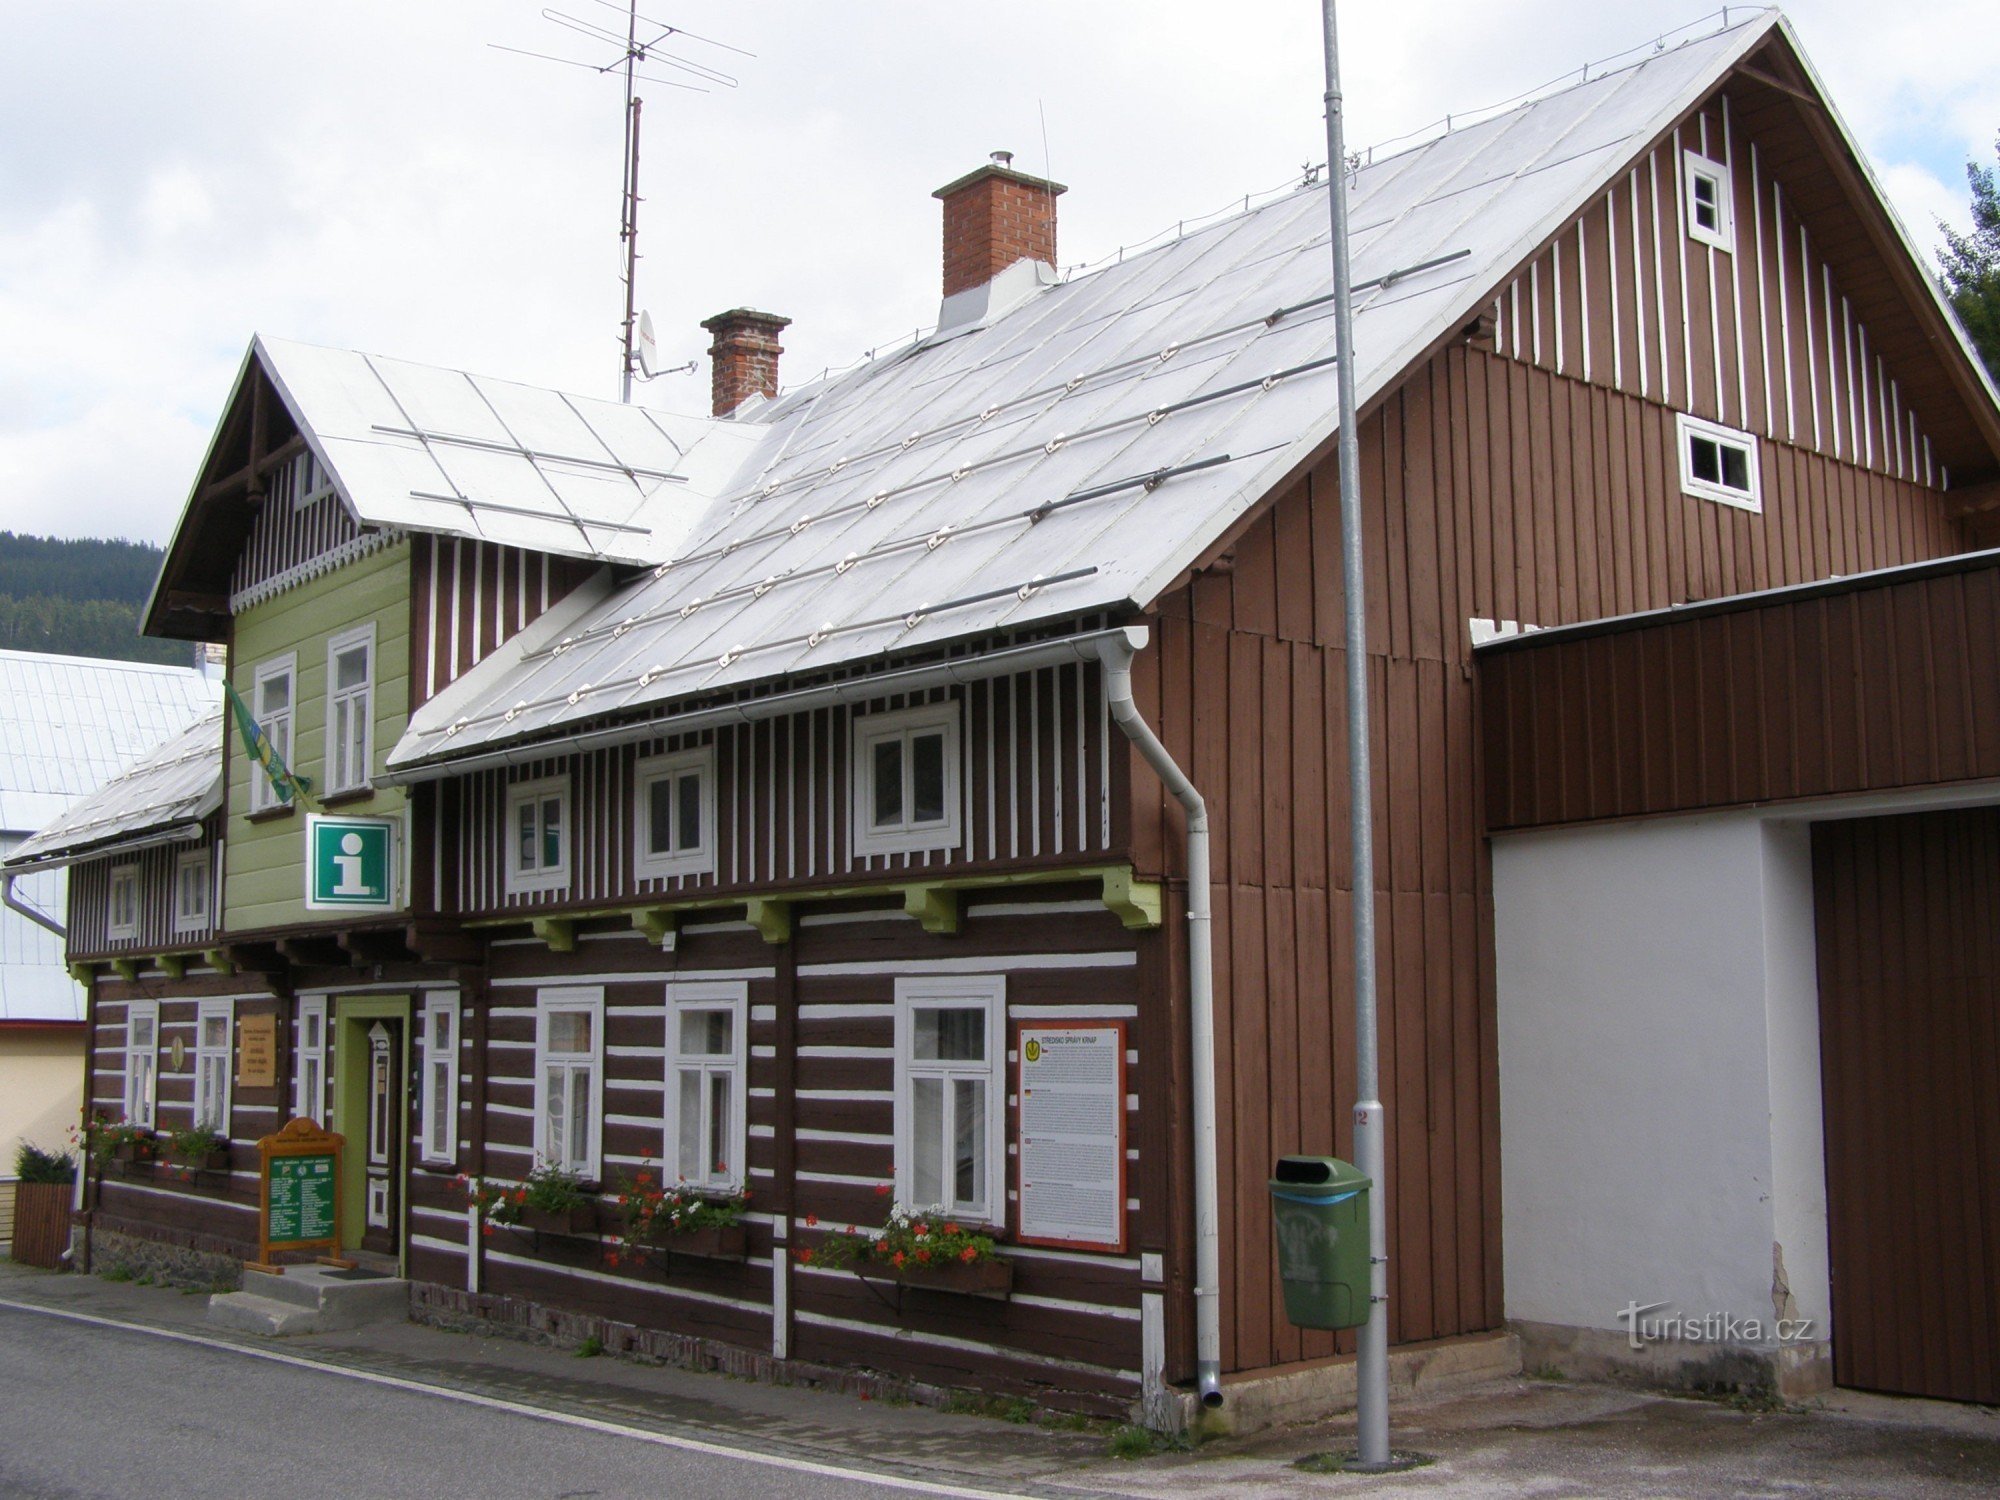 Pec pod Sněžkou - informationscentrum för KRNAP-administrationen